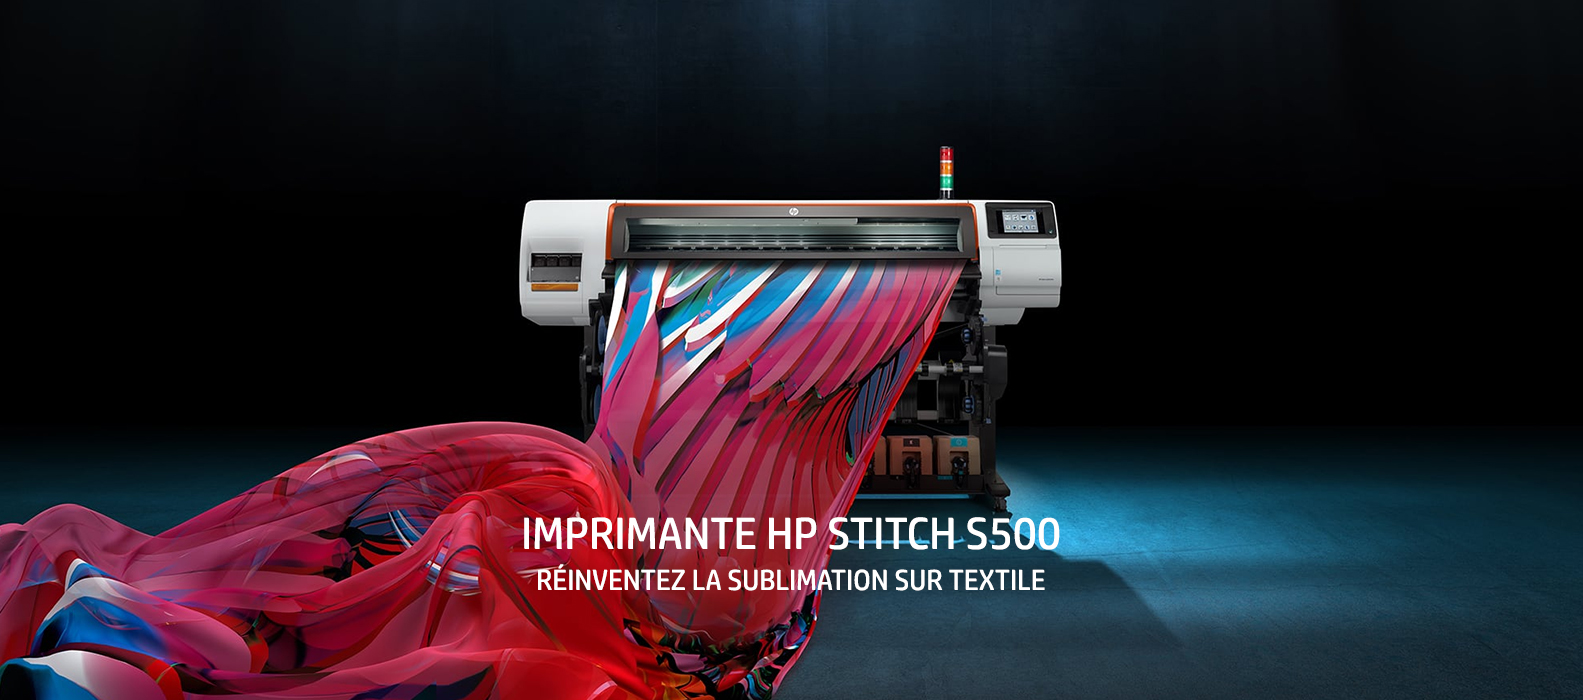 Imprimante HP STITCH S500